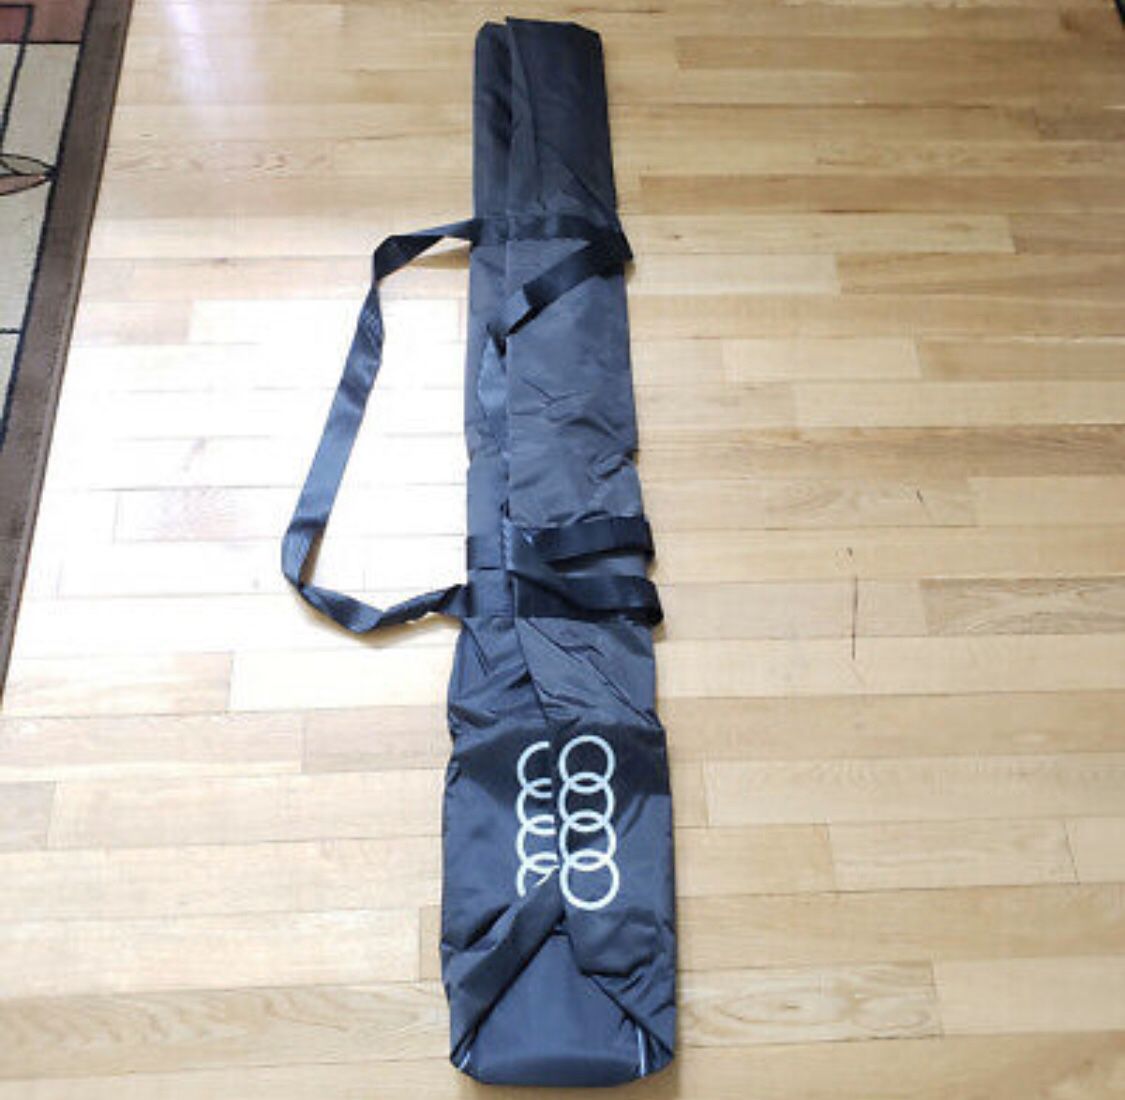 Audi ski bag part # 4L0 885 215 A